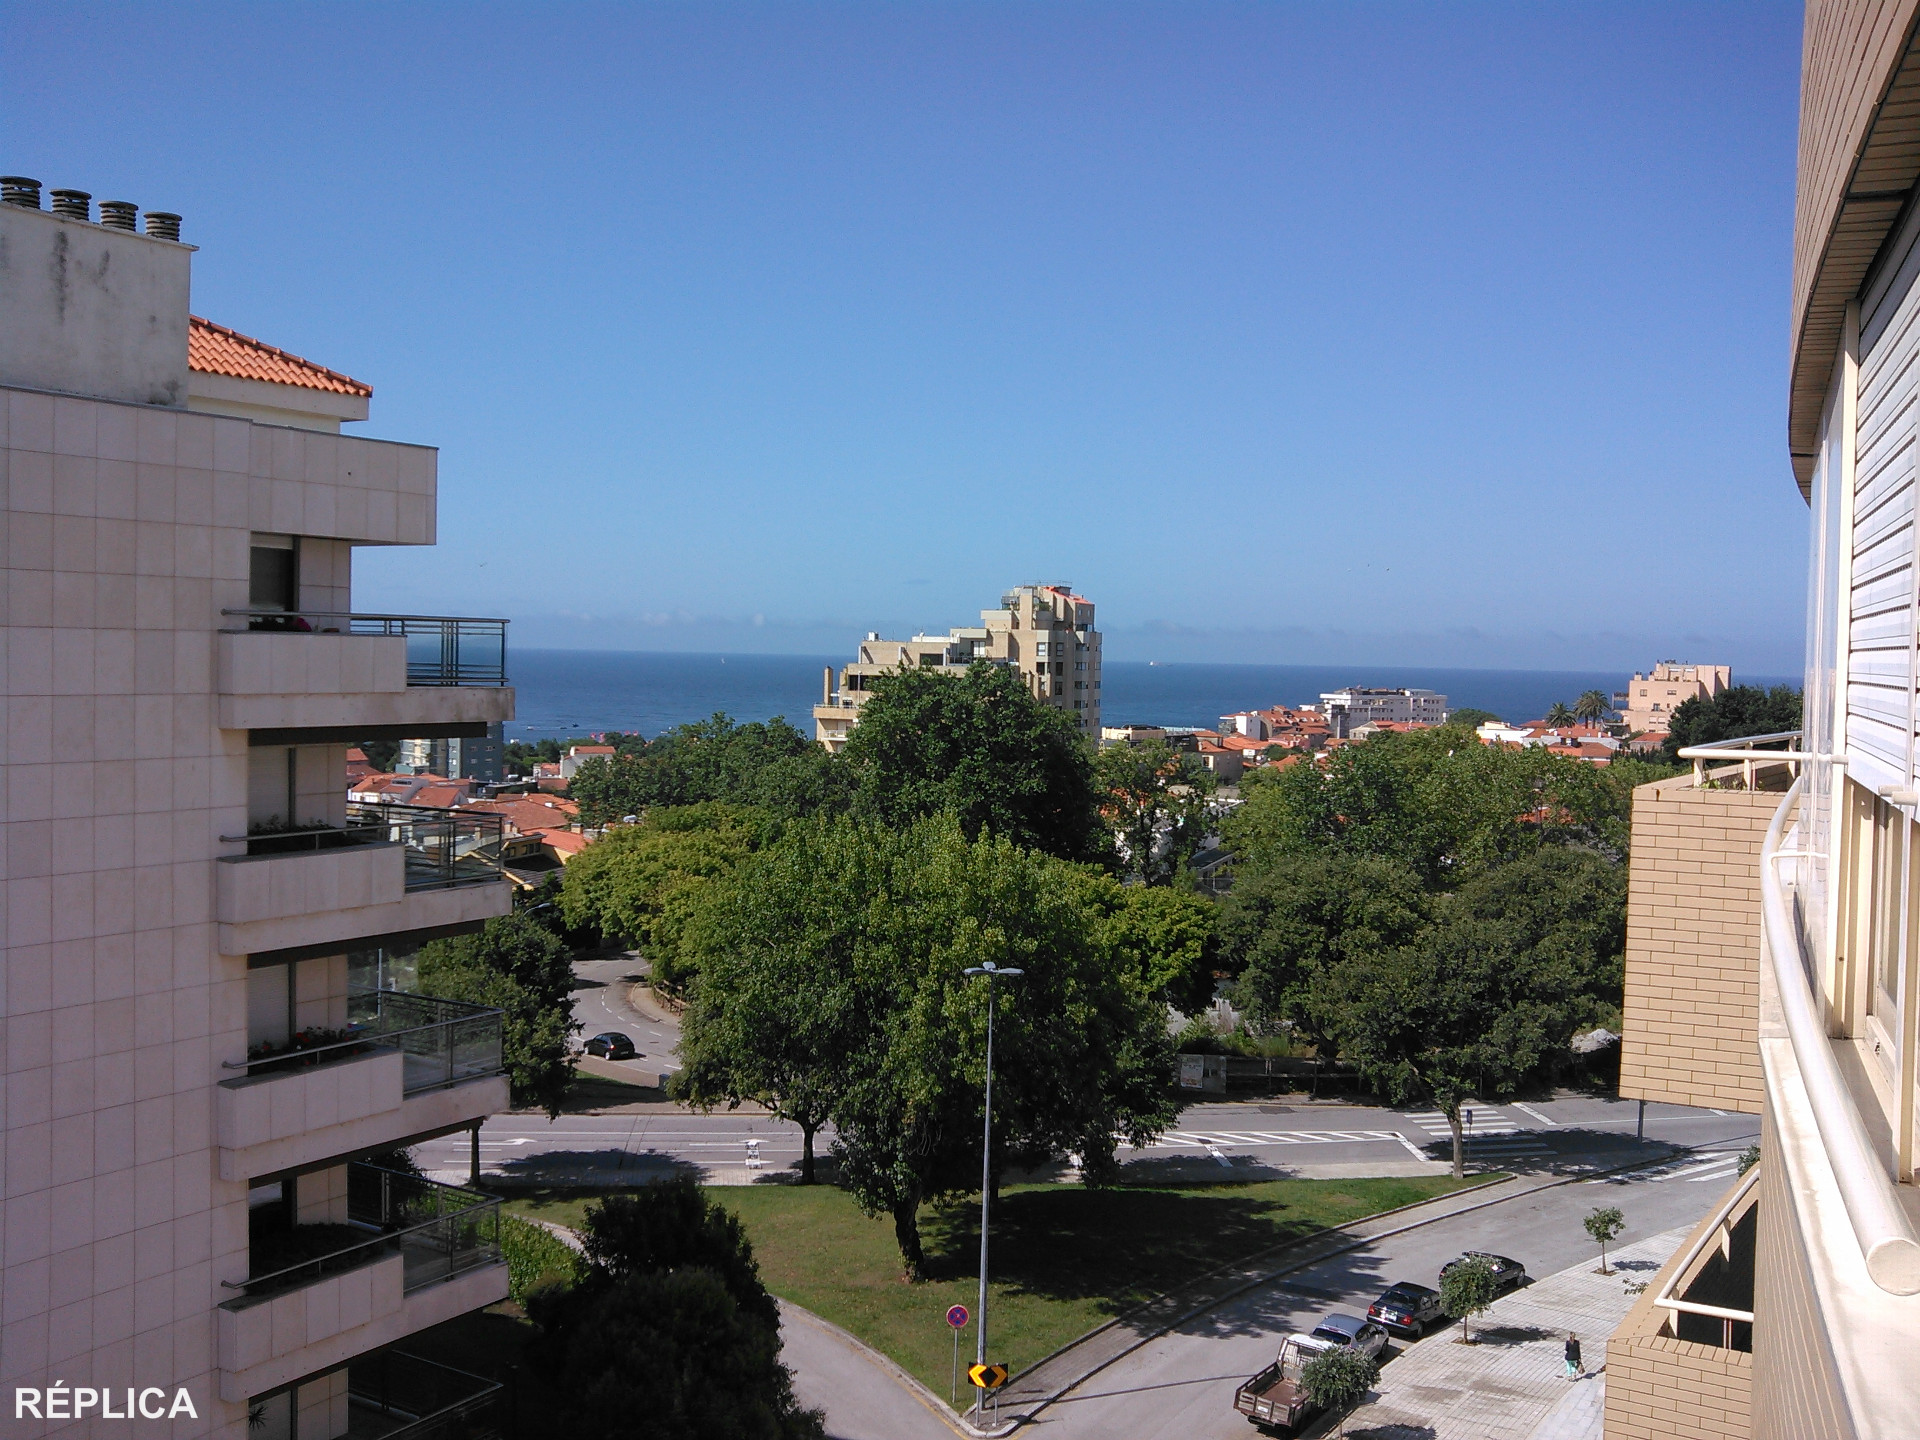 Apartamento T3 - Foz do Douro, com vistas de mar e de rio.